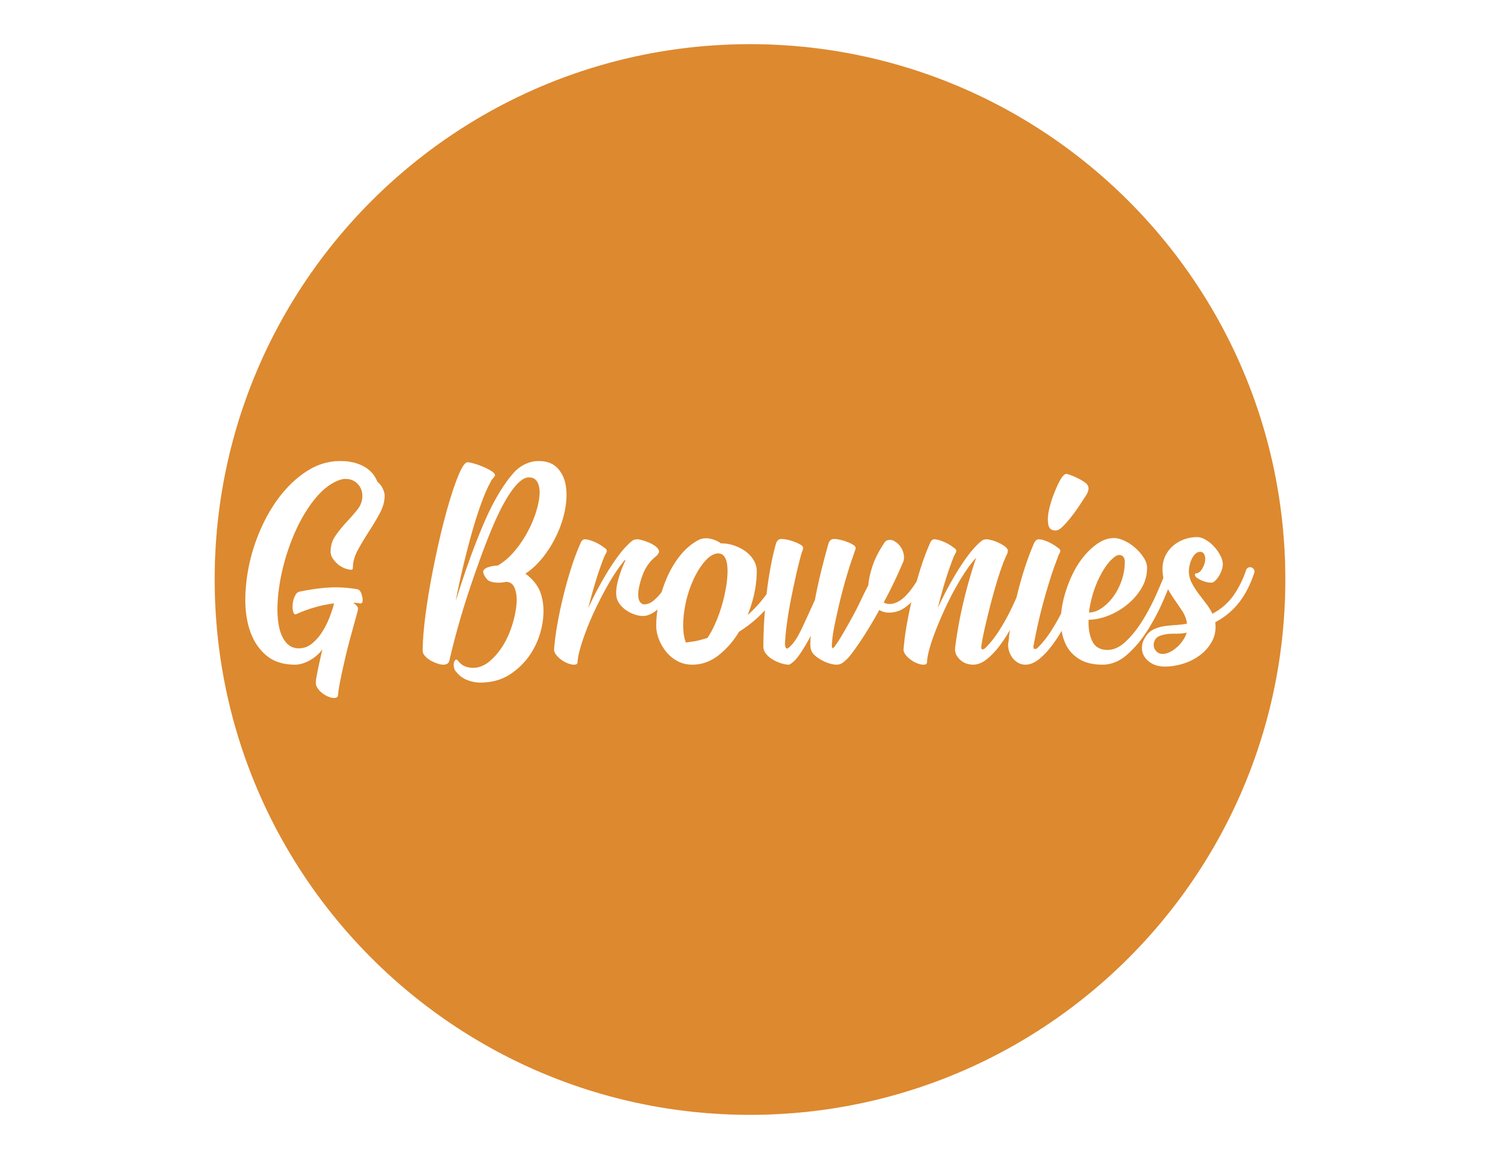 G Brownies